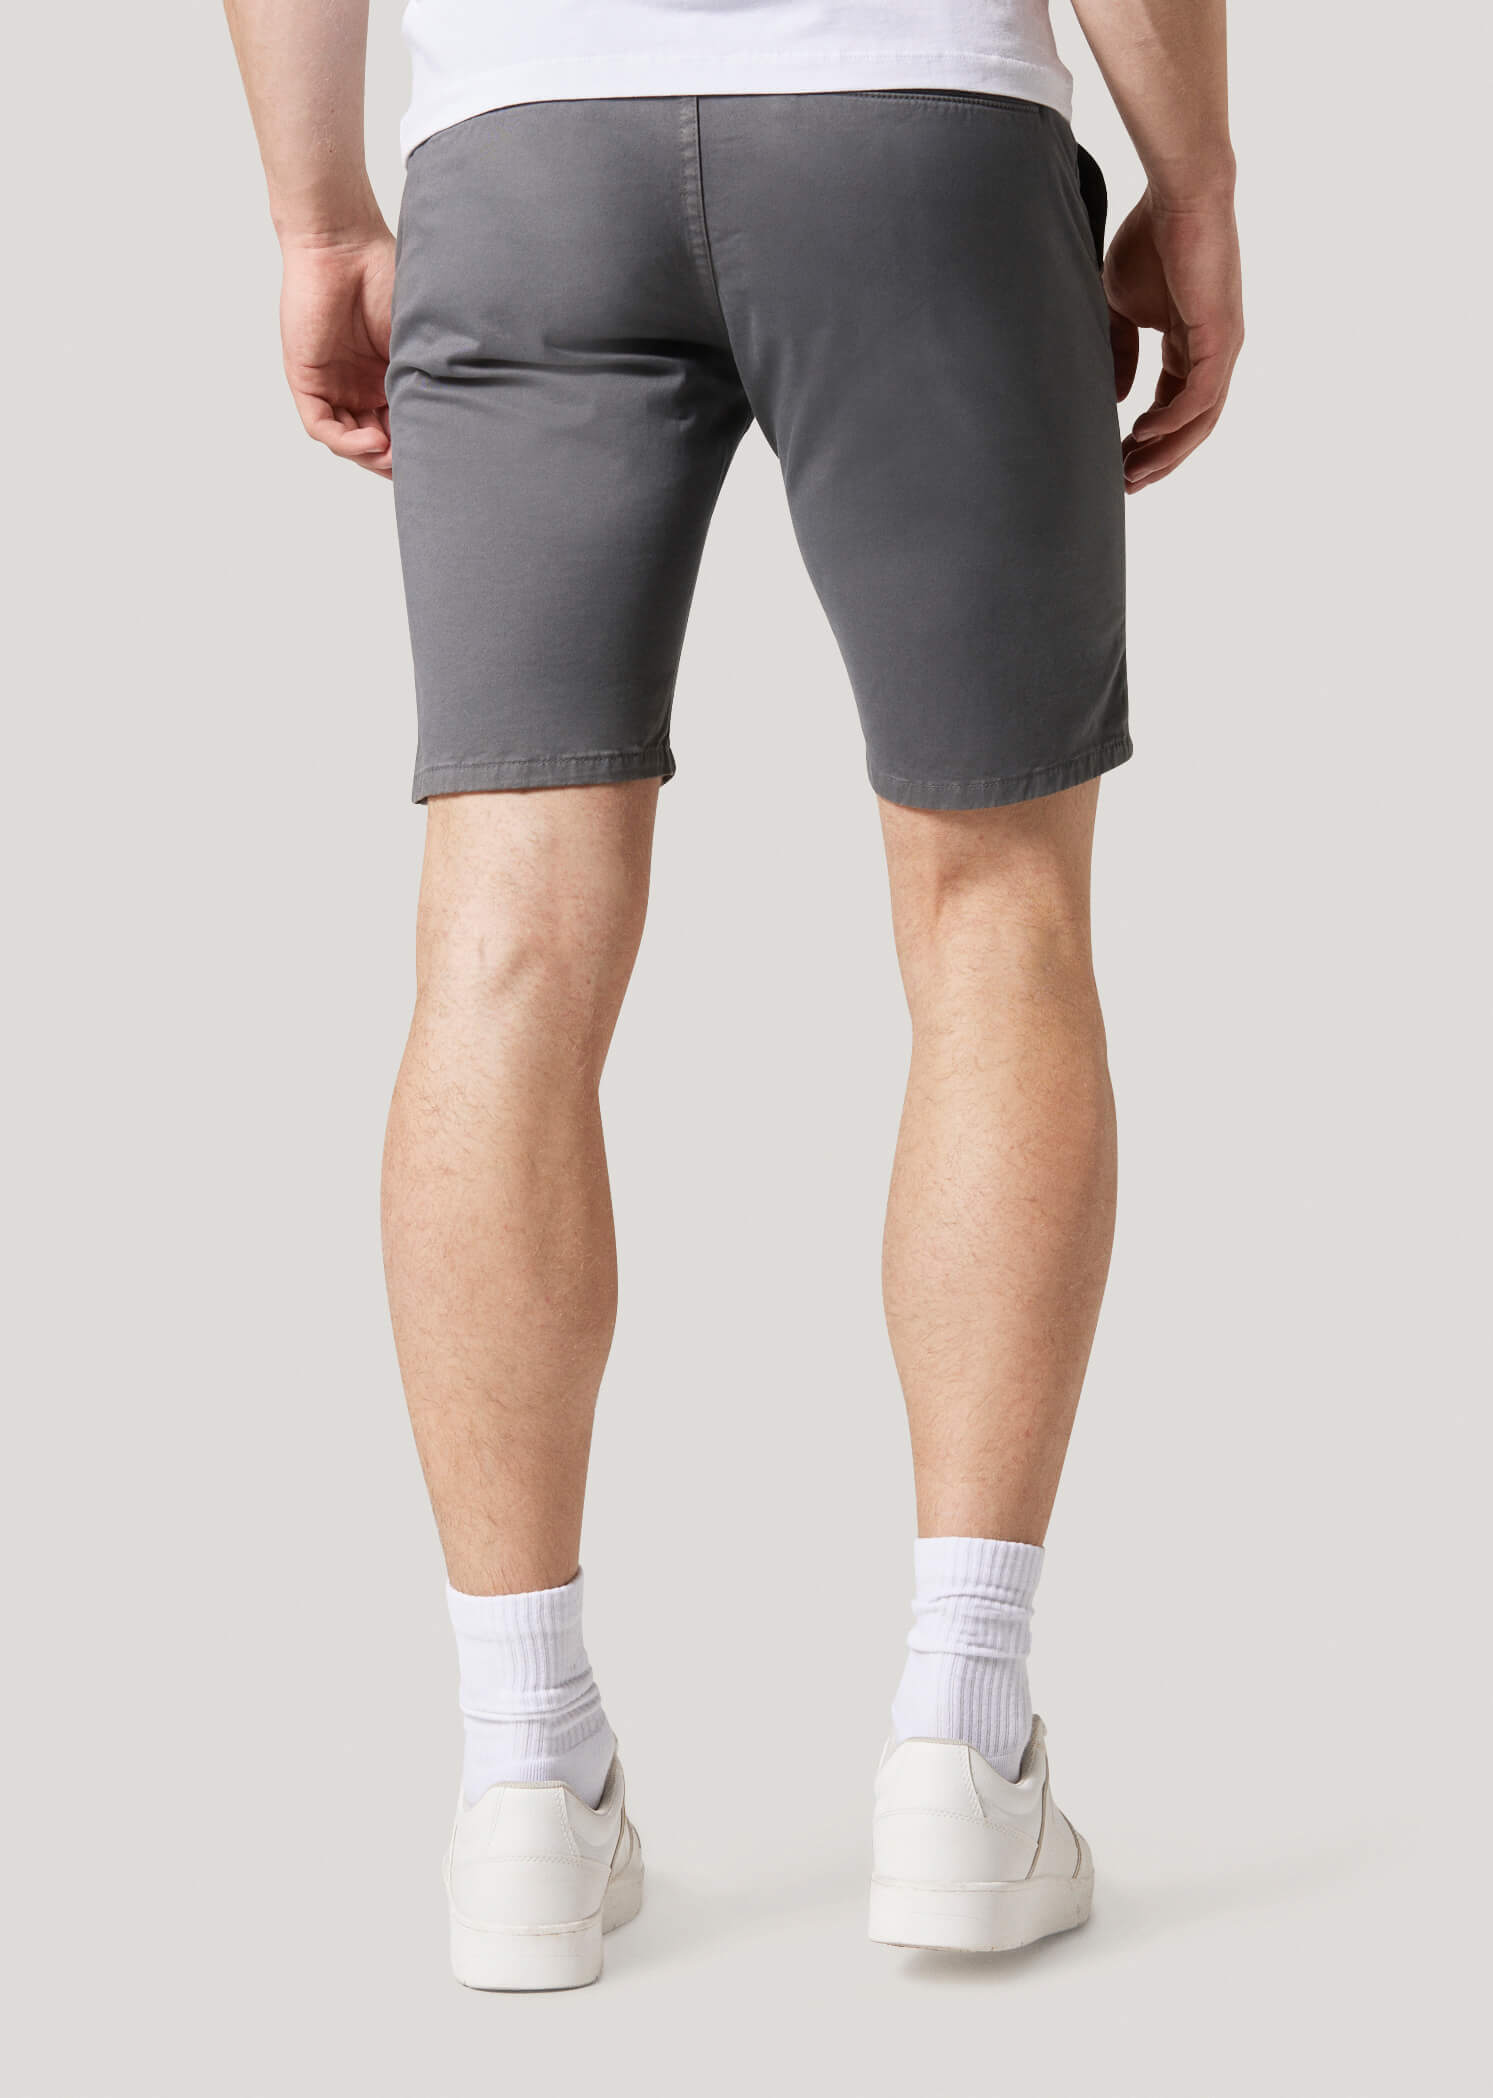 Redlaw Grey Chino Shorts